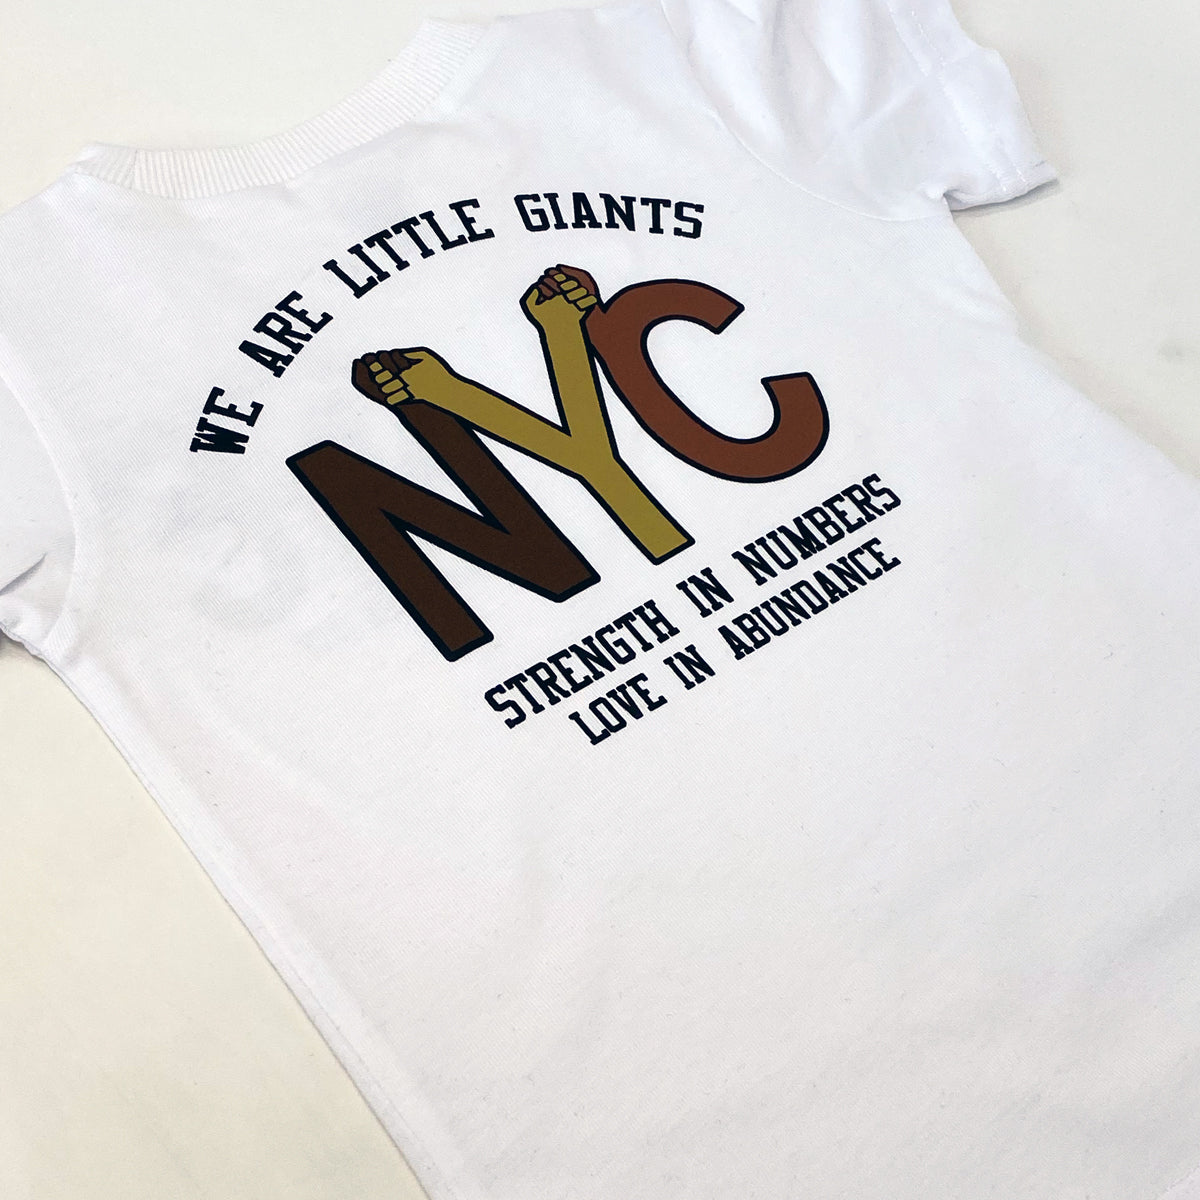 NYC Strength & Love T-shirt (White)